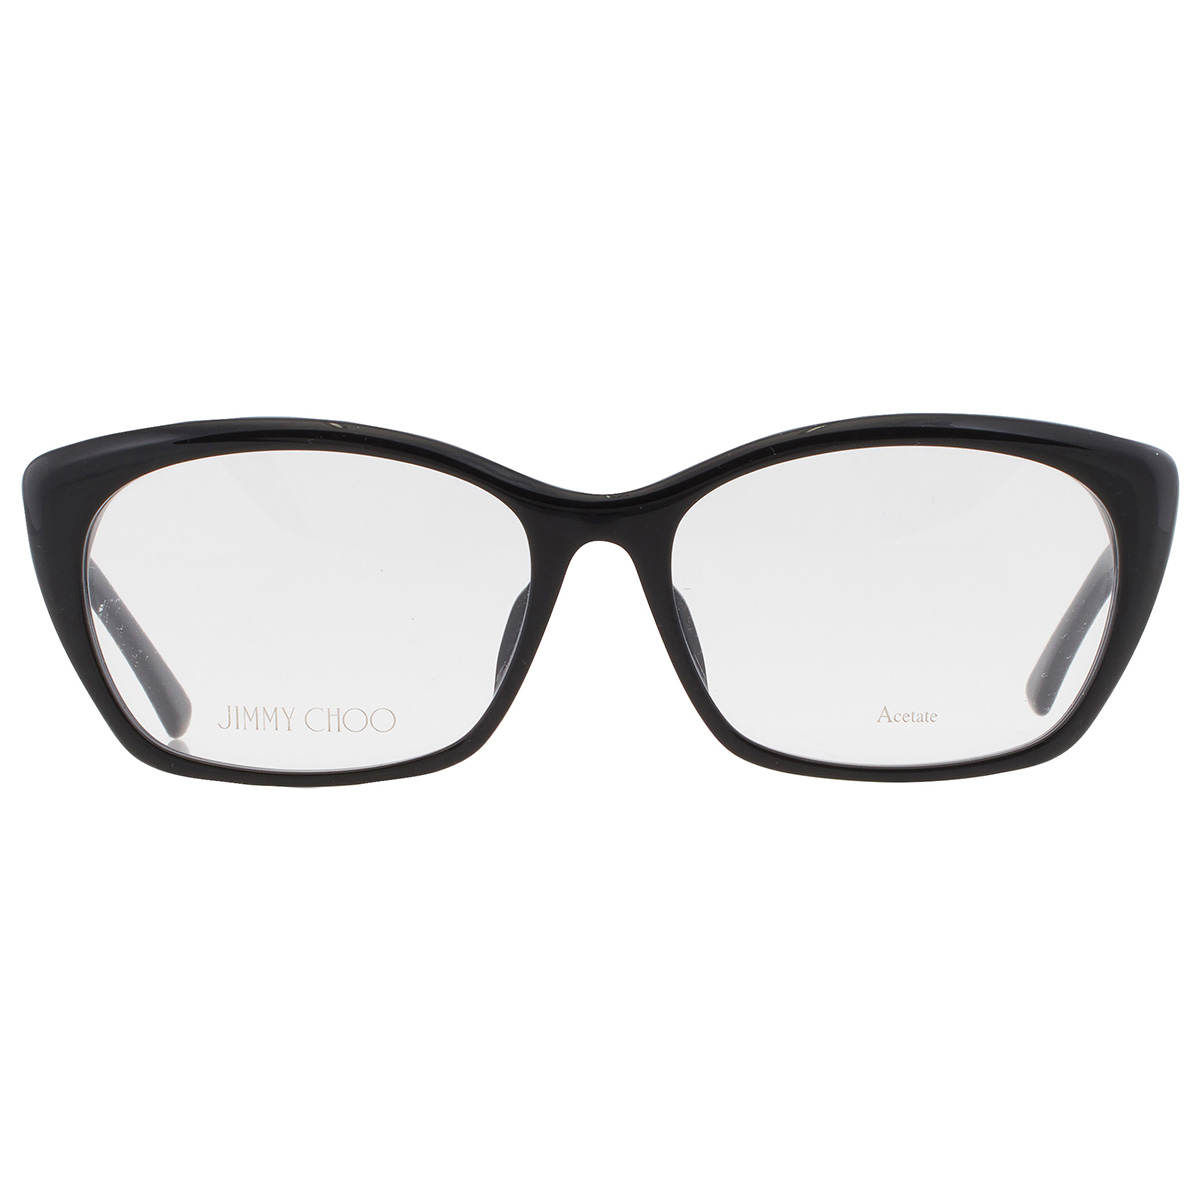 Jimmy Choo Ladies Black Square Eyeglass Frames JC346/F08070054